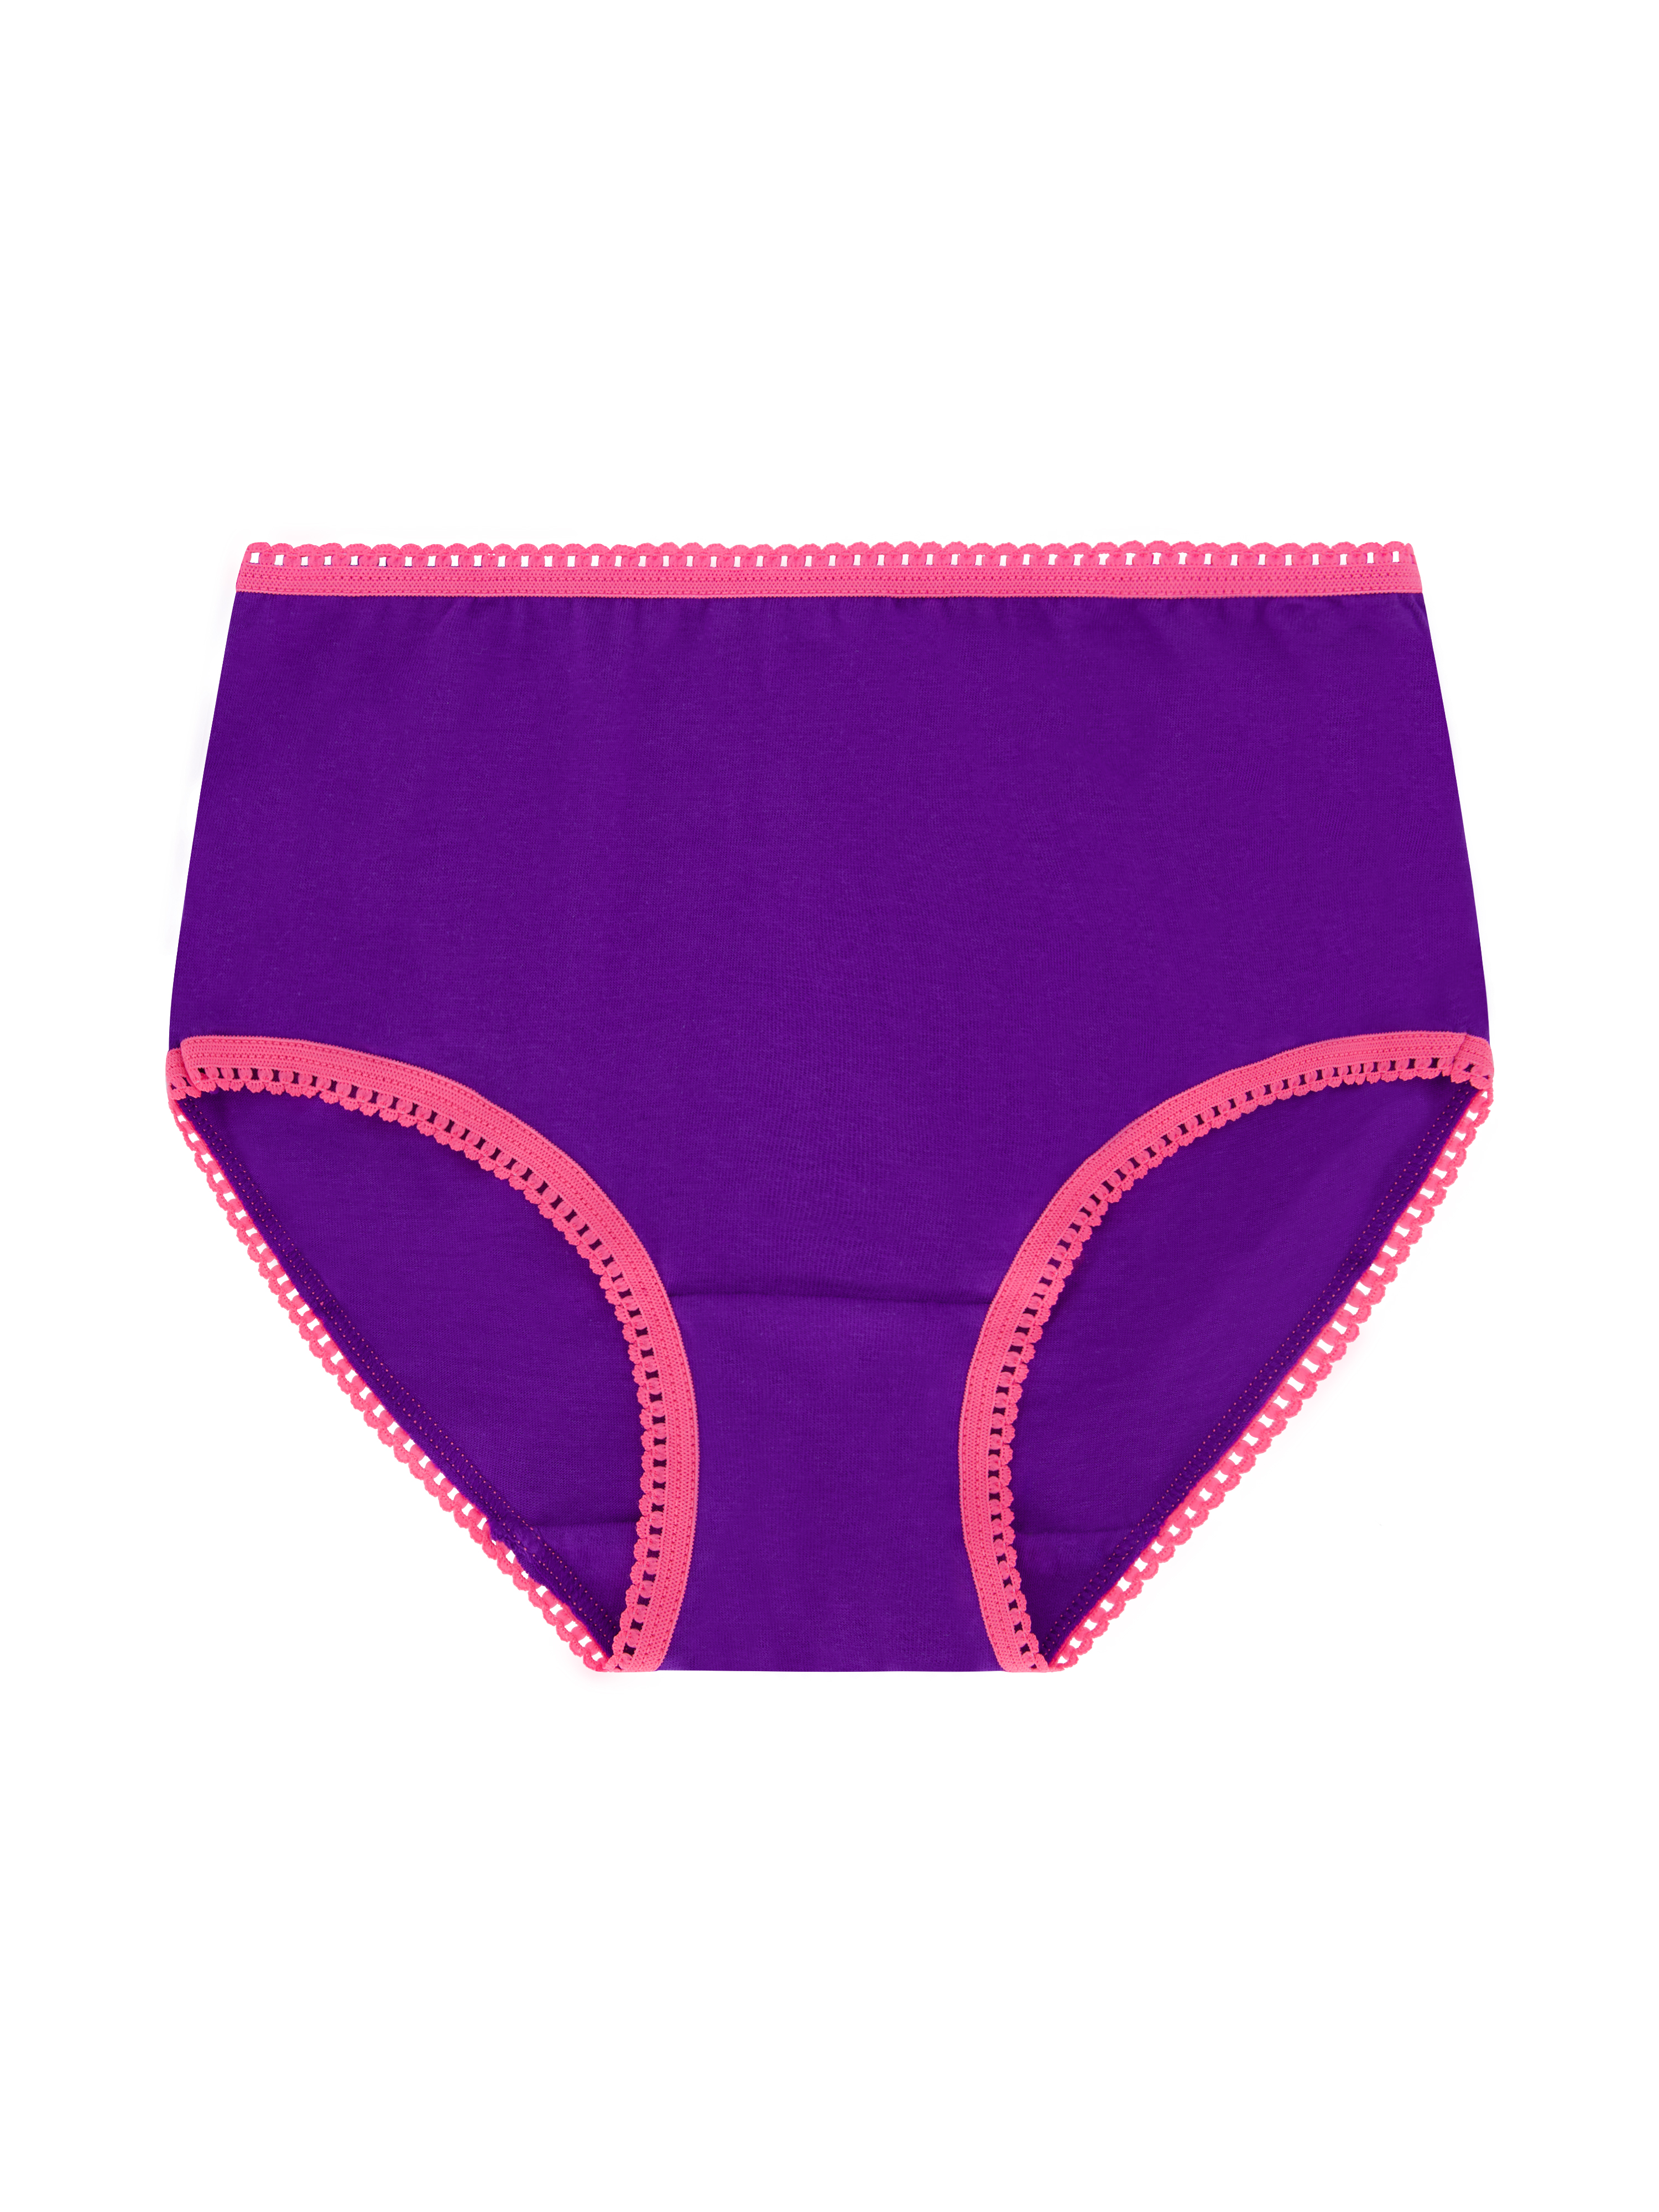 Wonder Nation Girls Brief Underwear 14-Pack, Sizes 4-18 - image 12 of 17